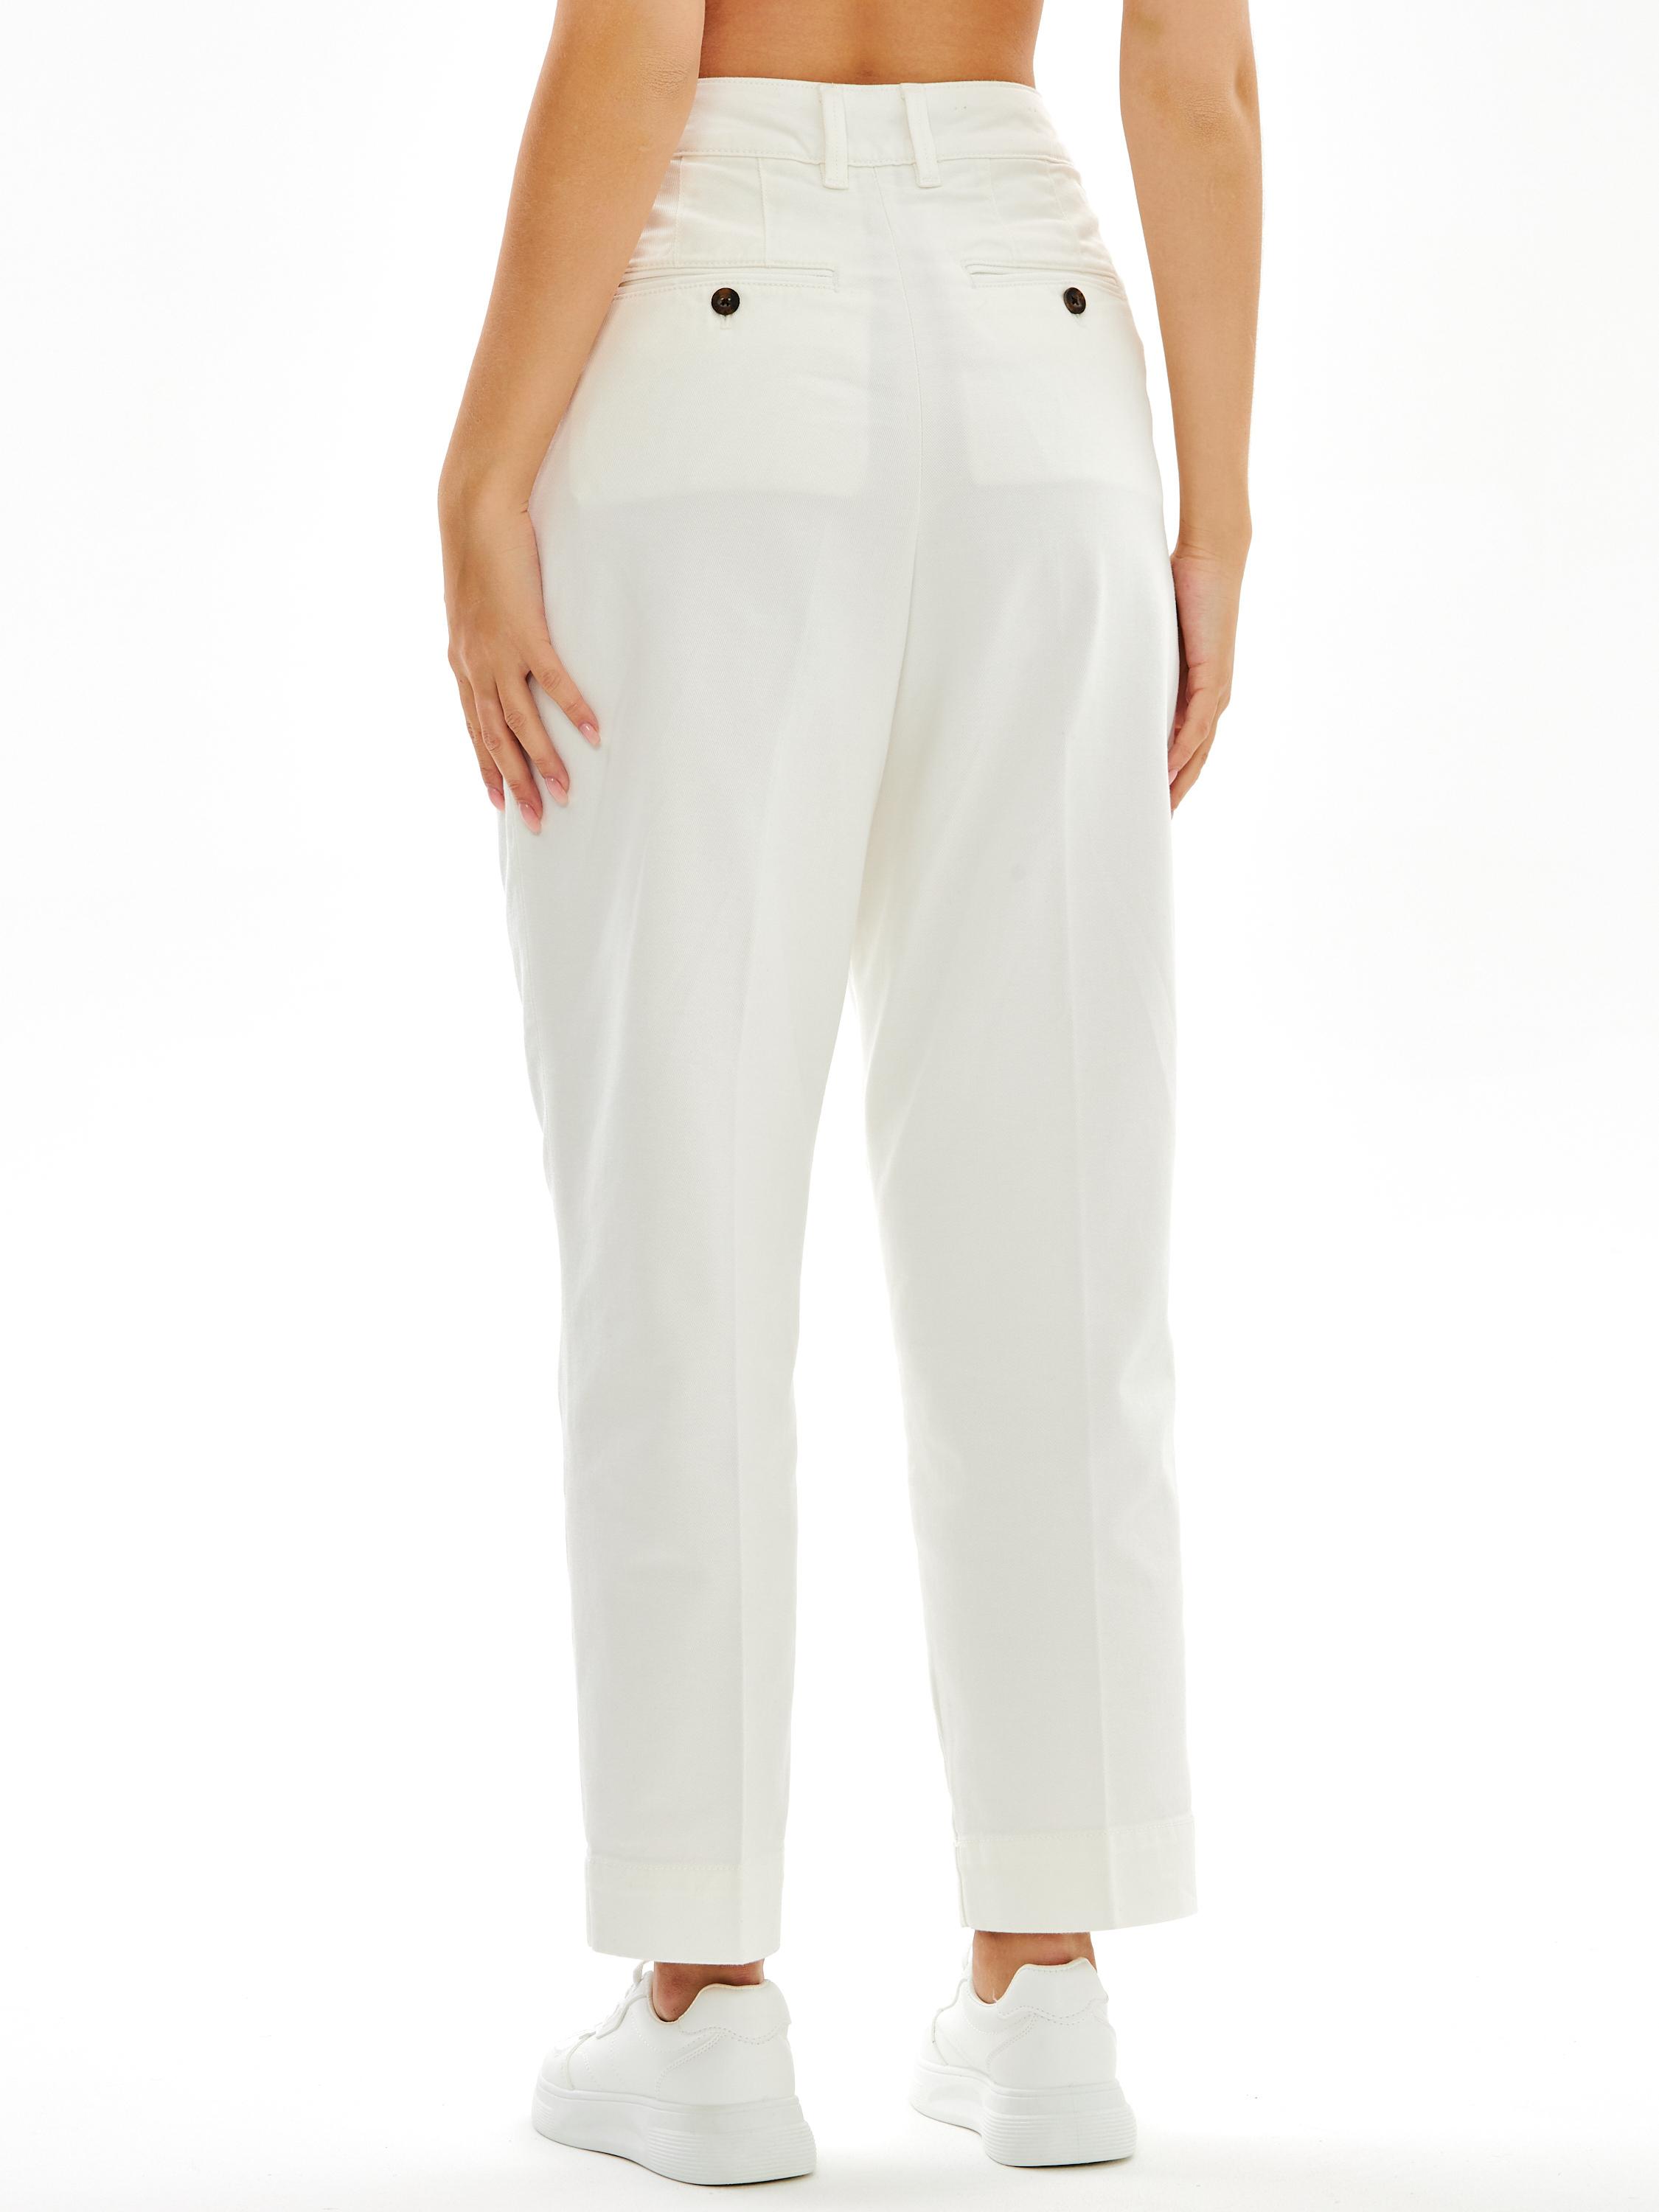 Женские брюки чинос Gant, белые, цвет белый, размер 38 - фото 4